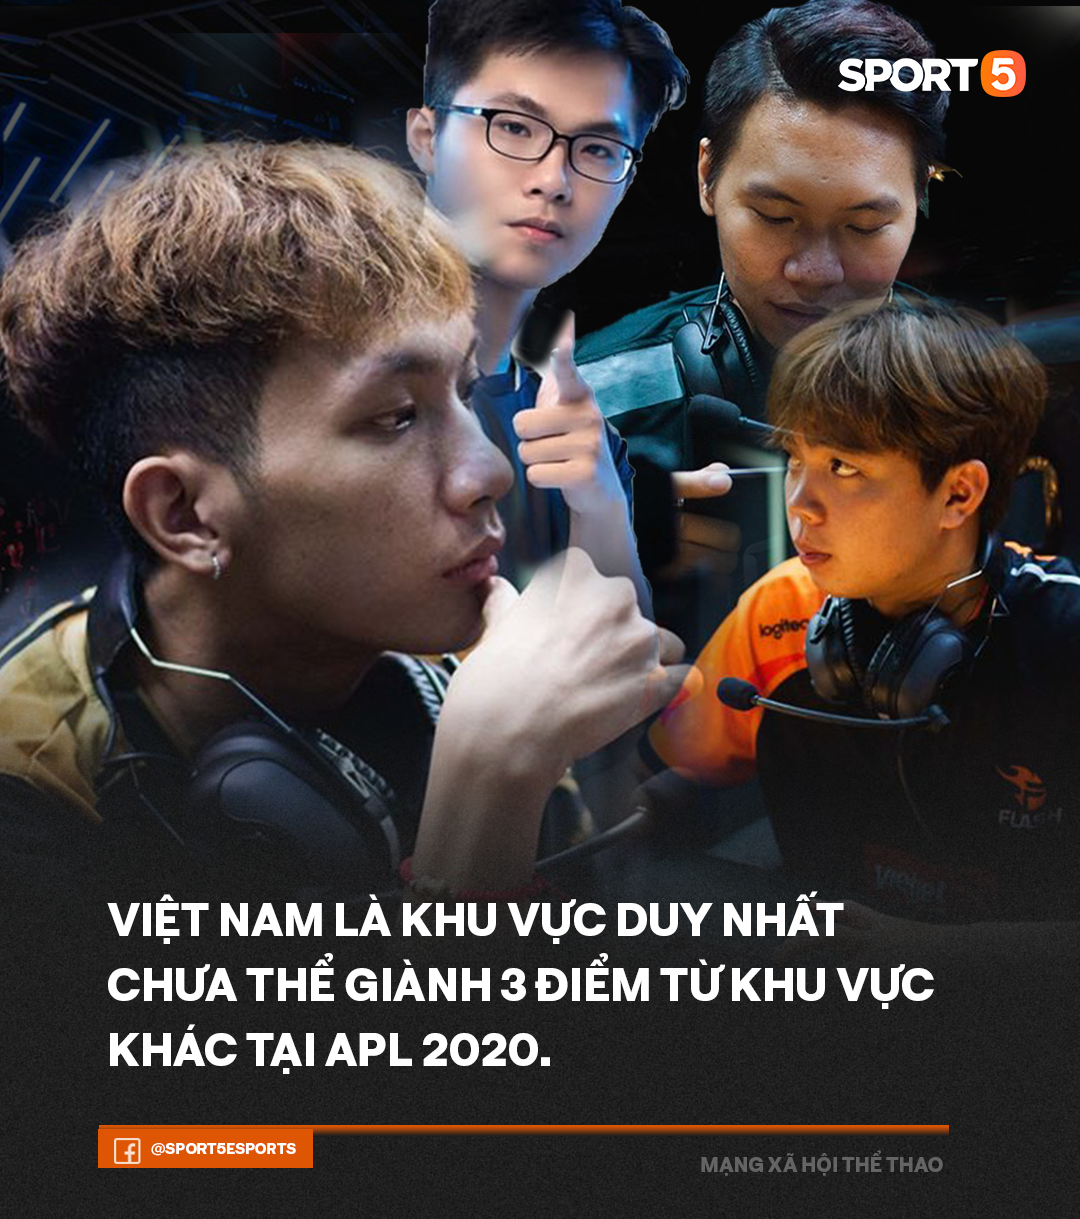 4 đội Việt Nam chưa thể đánh bại các đội quốc tế trong tuần đầu tiên APL 2020, người hâm mộ có nên lo lắng? - Ảnh 1.